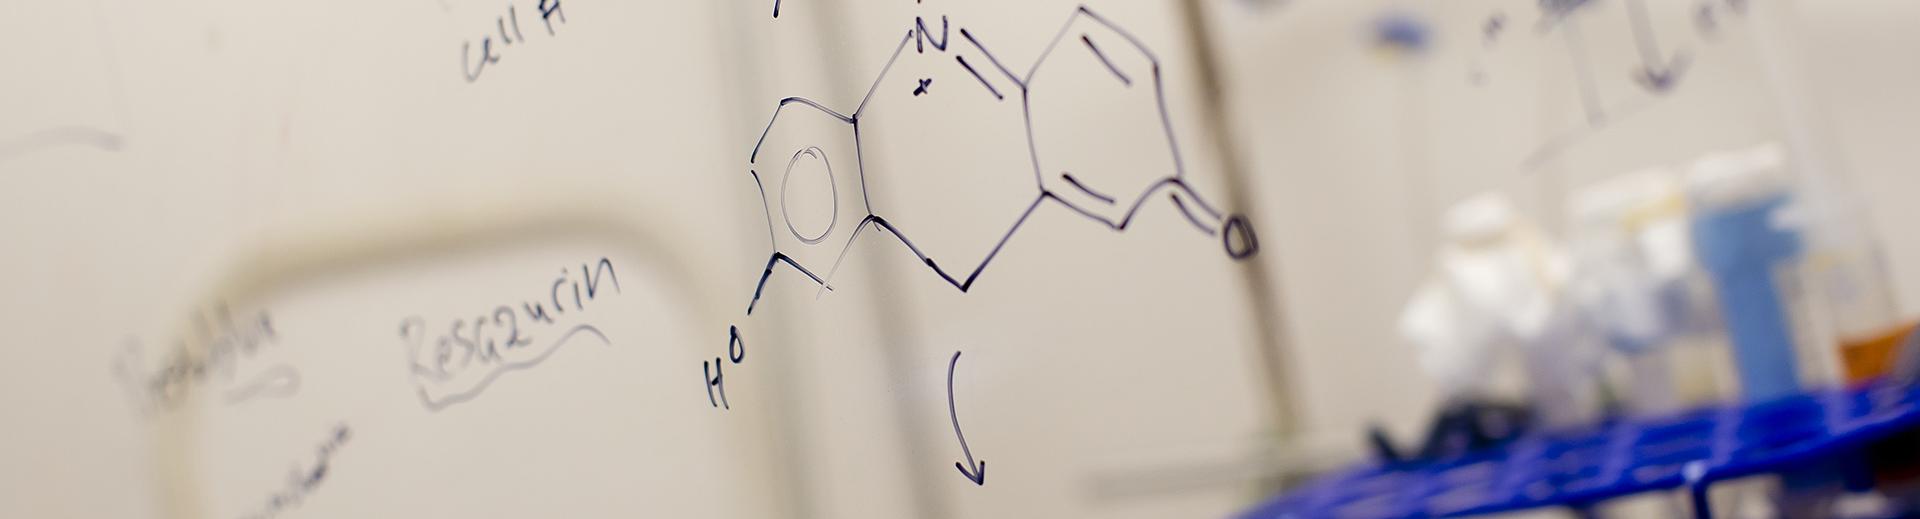 Formulas written on board in a bioengineering classroom